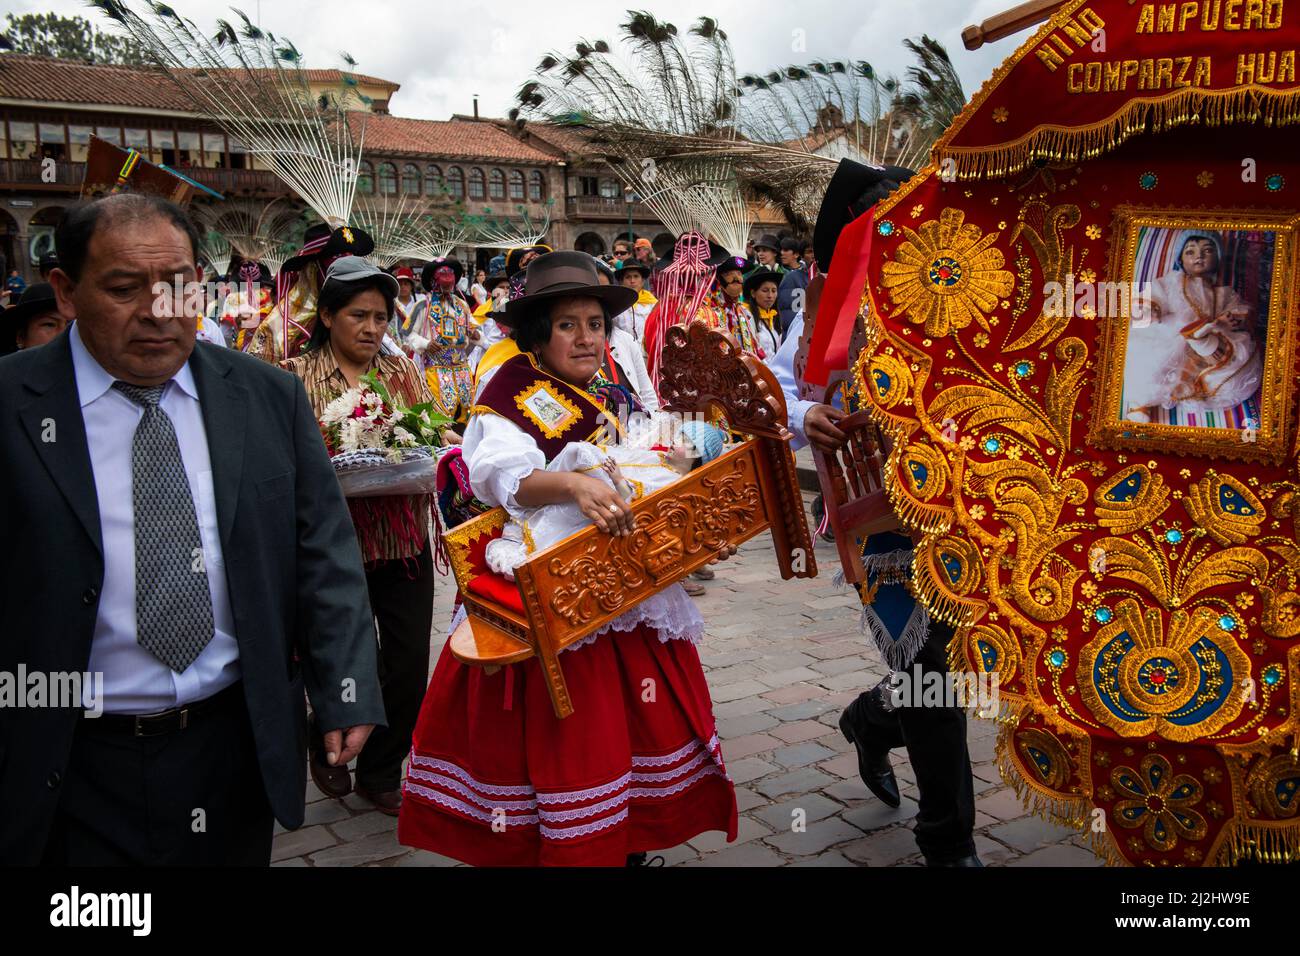 Cuzco, Perú - 25 de diciembre de 2013: Un grupo de personas que visten ropa y máscaras tradicionales durante la Huaylia el día de Navidad en la Plaza de Armas Foto de stock